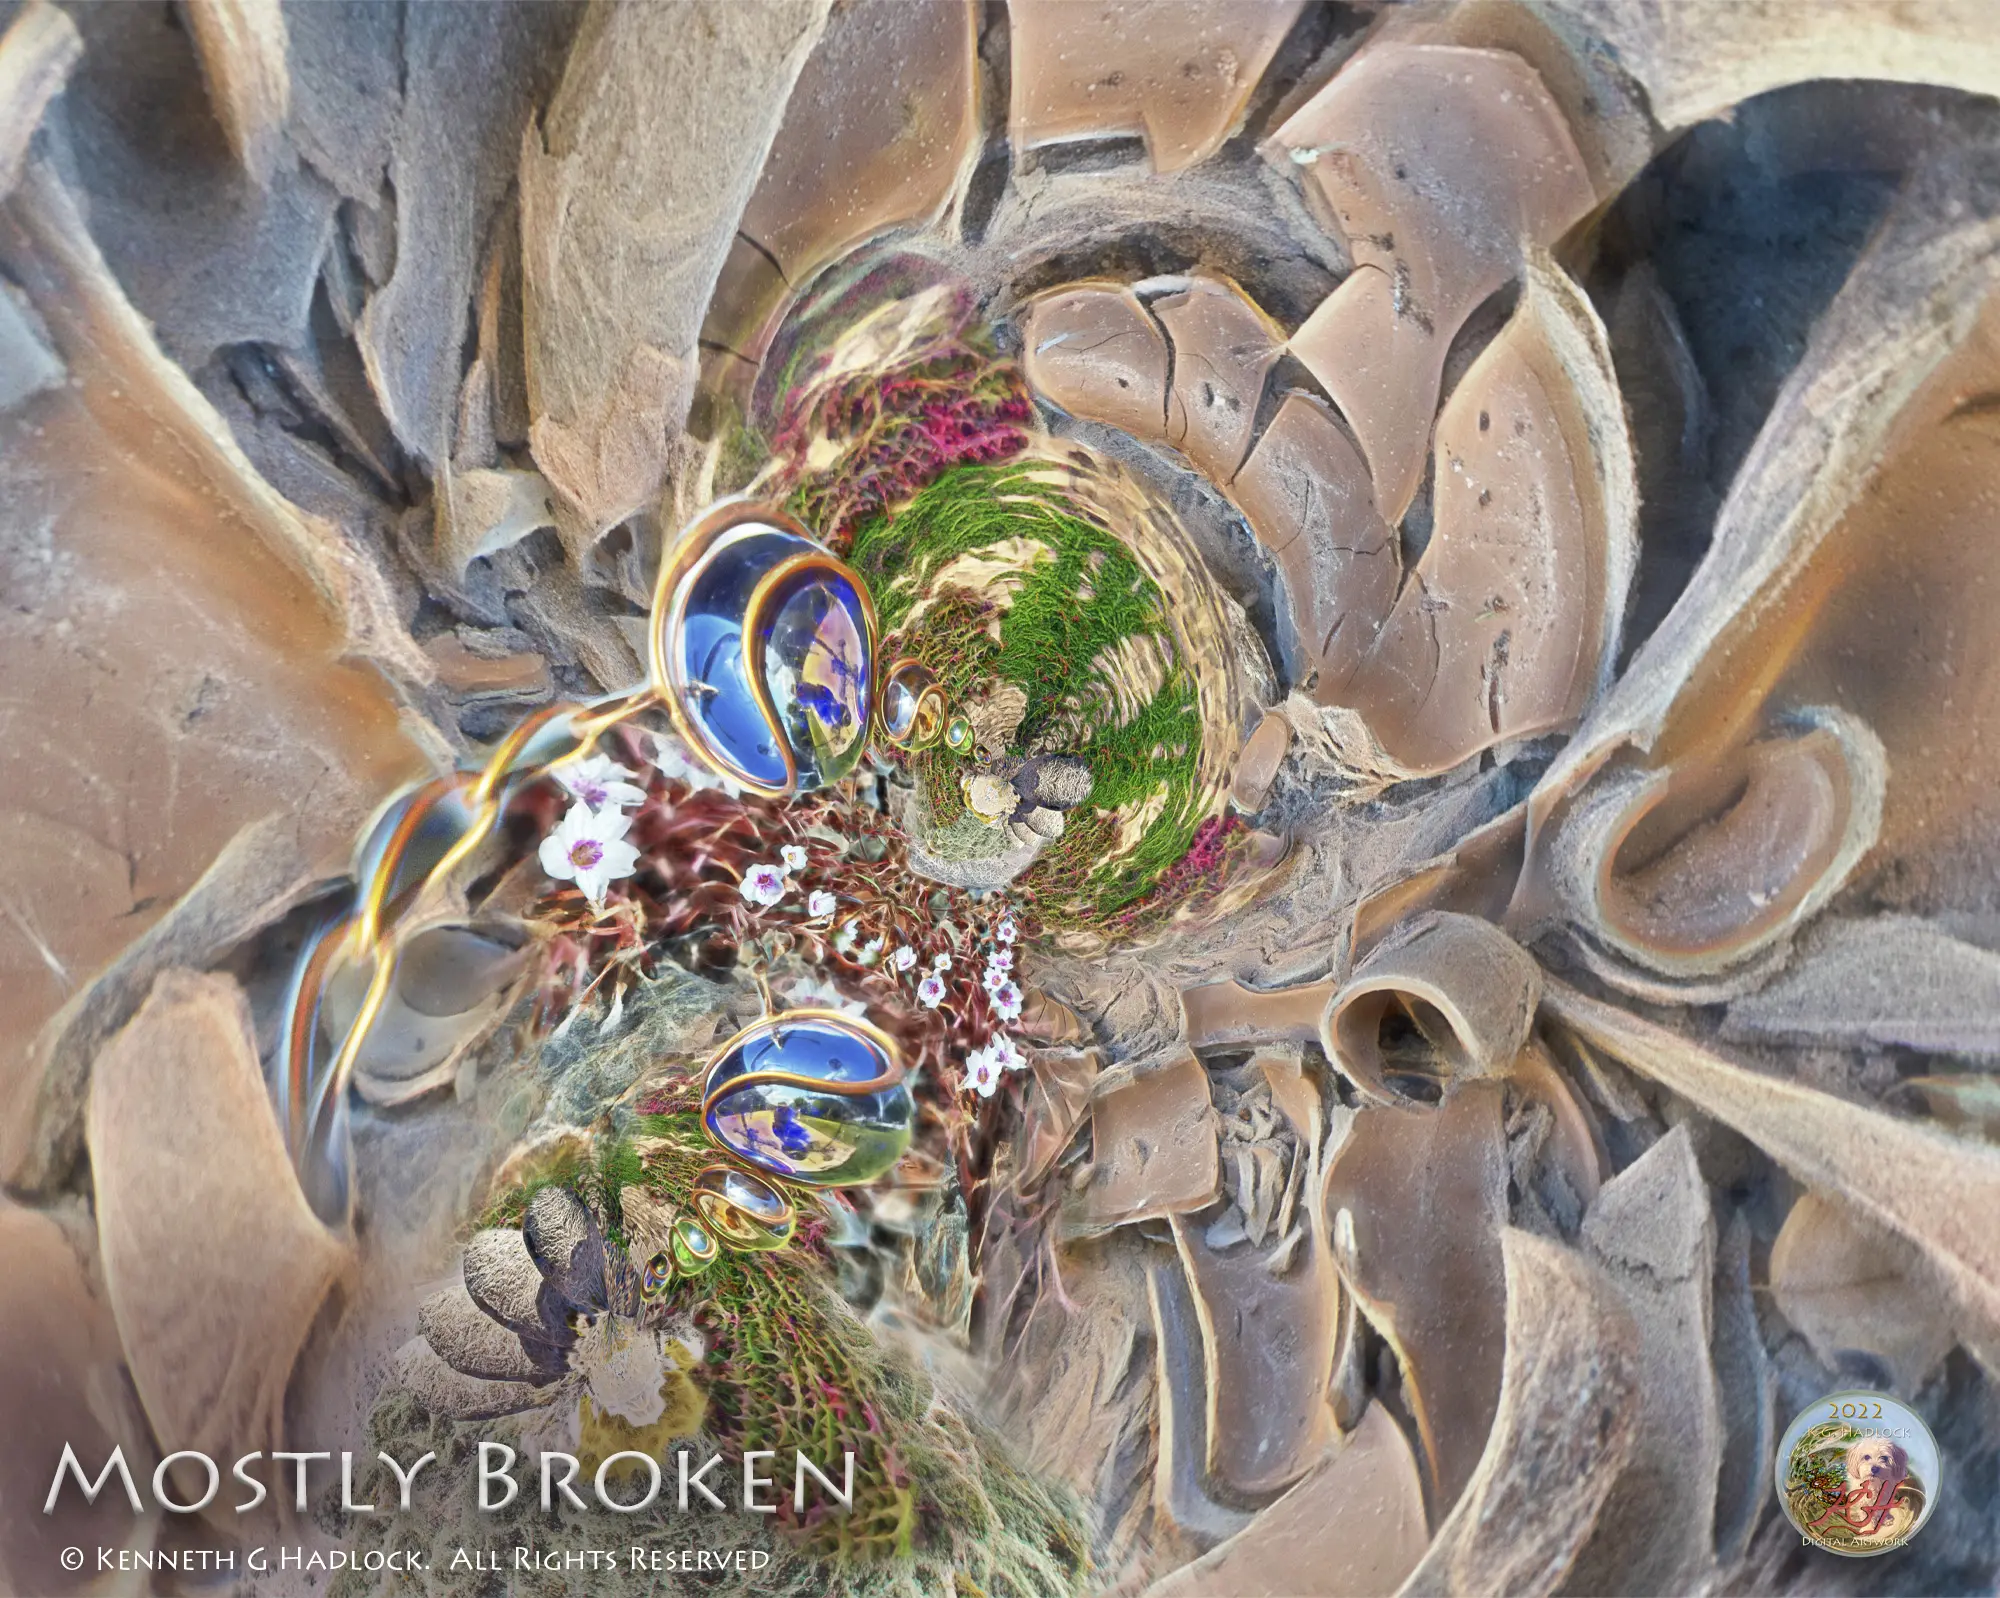 Digital Art - "Mostly Broken"